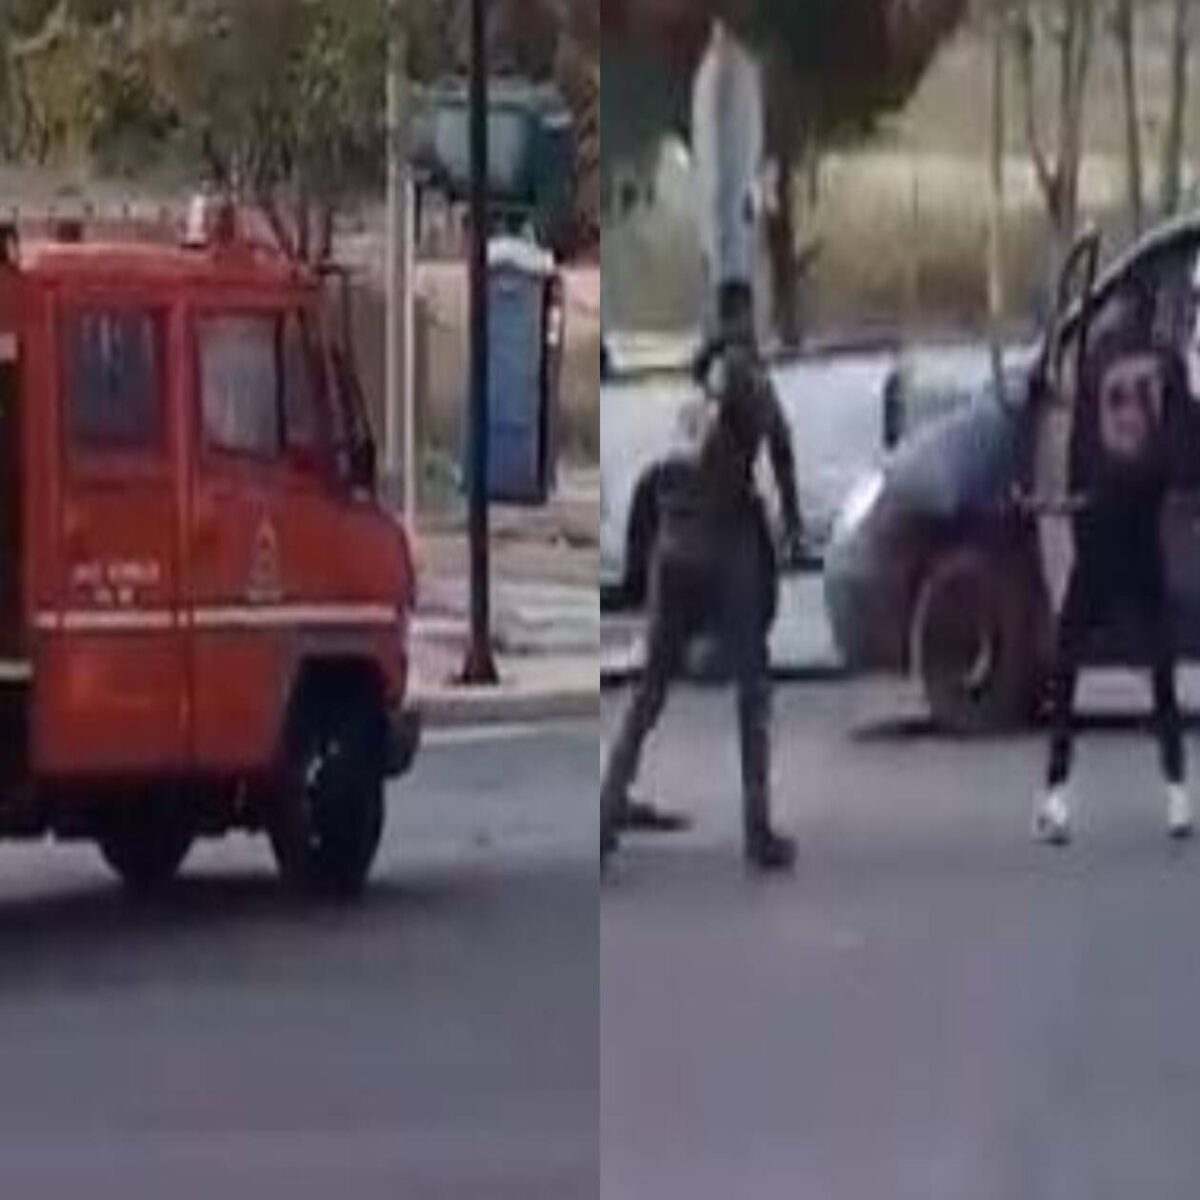 Η στιγμή της επίθεσης Ρομά σε πυροσβεστικό όχημα – Τραυματίζουν πυροσβέστη και τον κλέβουν